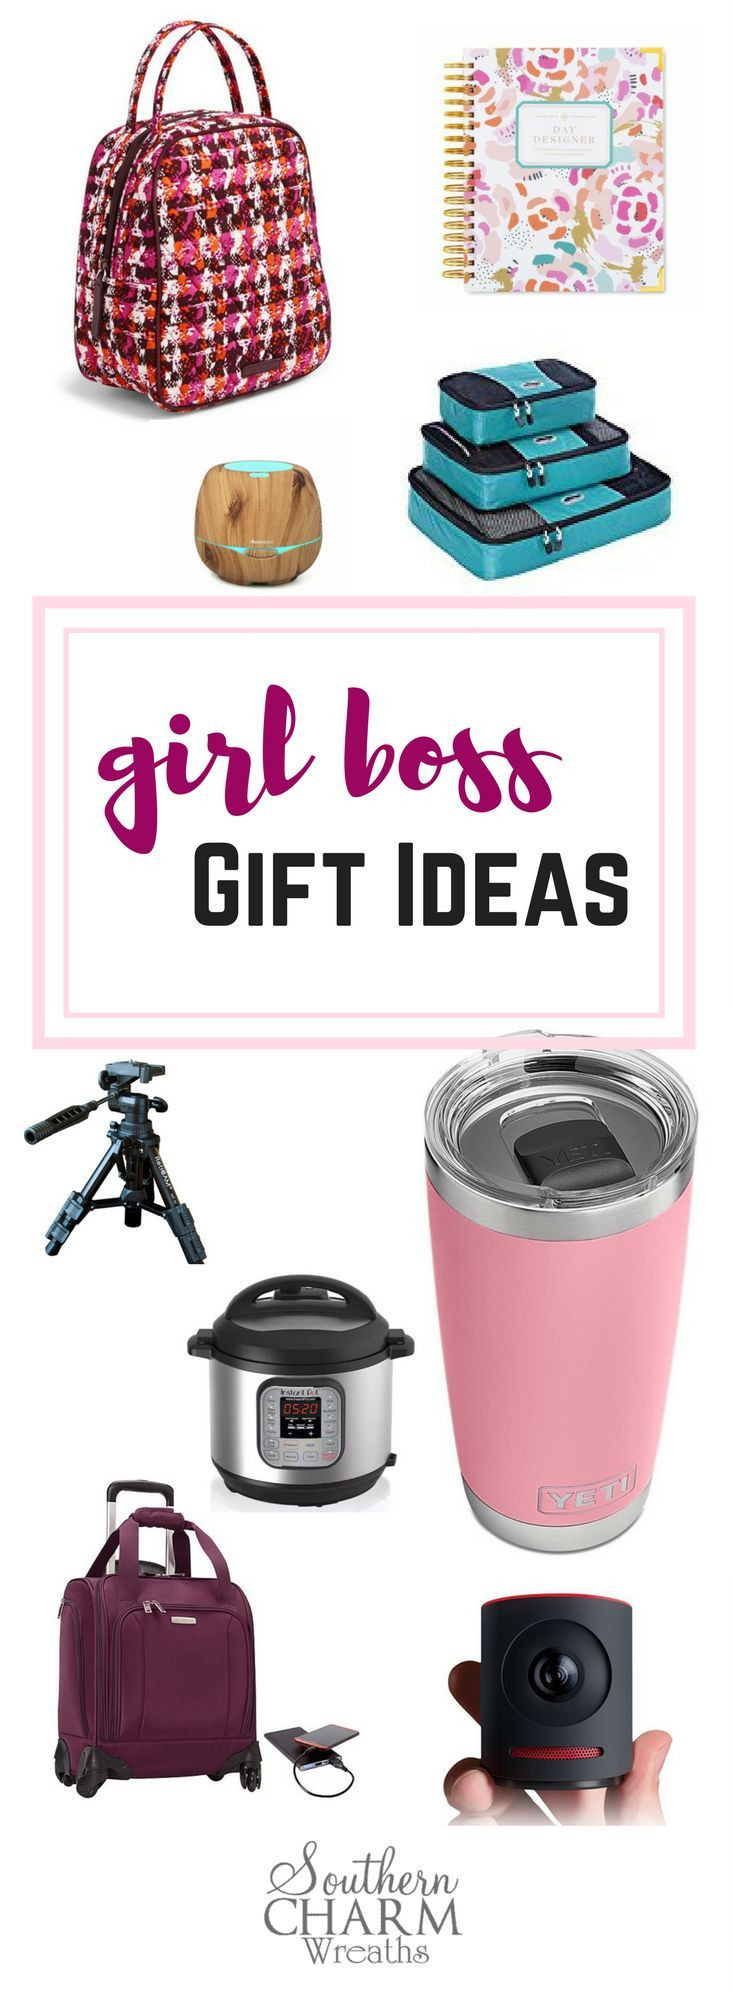 Boss Christmas Gift Ideas
 Best 25 Boss ts ideas on Pinterest